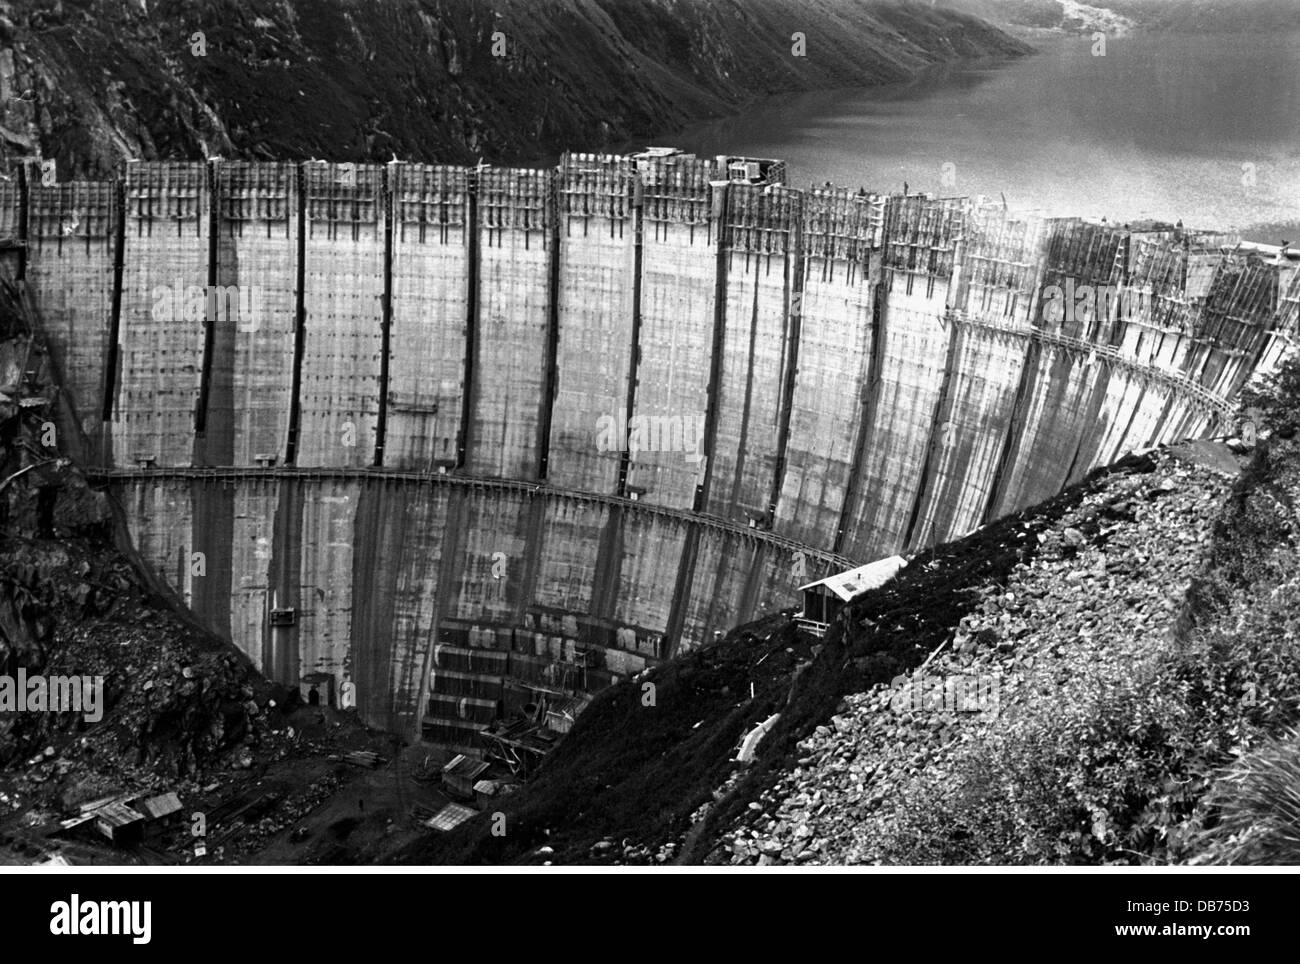 Energie, Wasser, Limberg-Staudamm des Kaprun-Kraftwerks während der Bauphase, Österreich, um 1950, zusätzliche-Rights-Clearences-nicht vorhanden Stockfoto